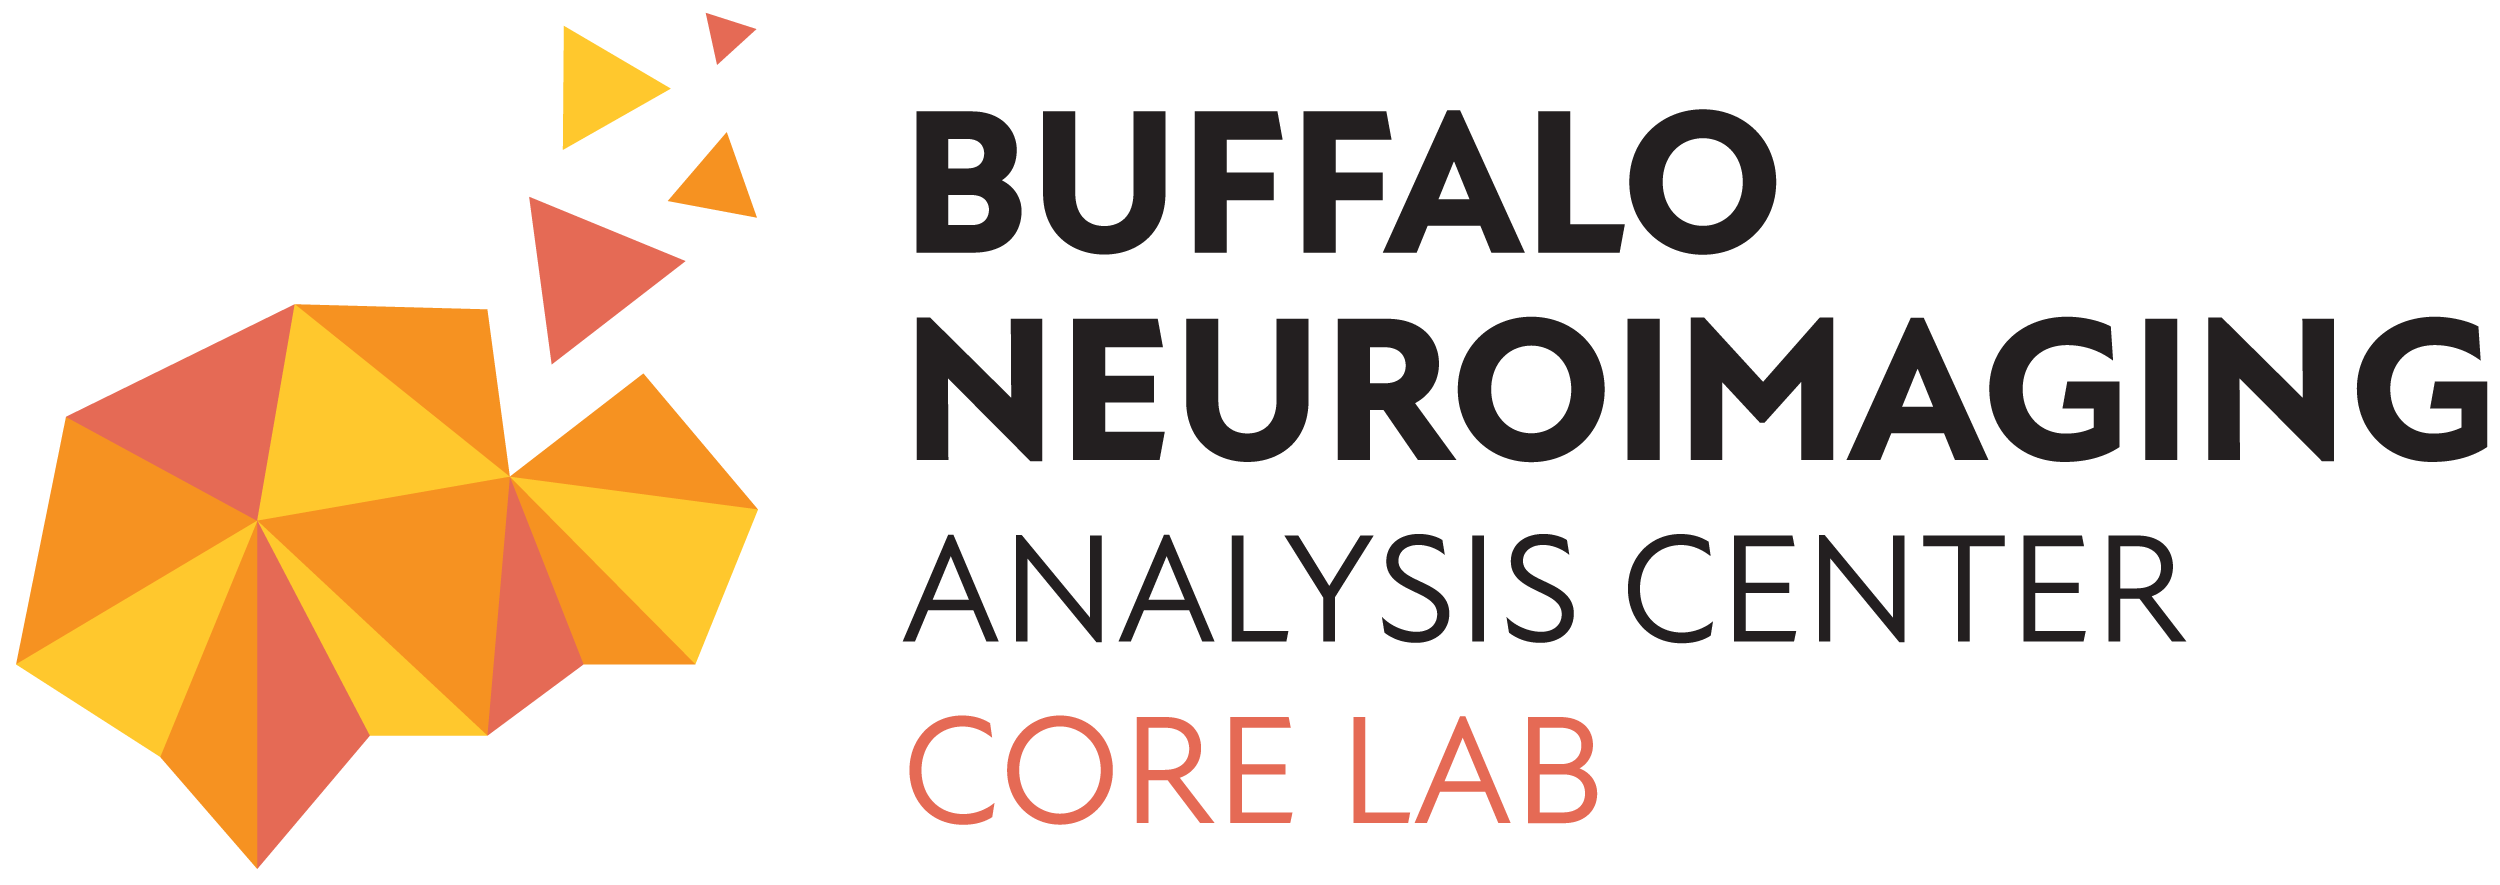 BNAC Core Lab